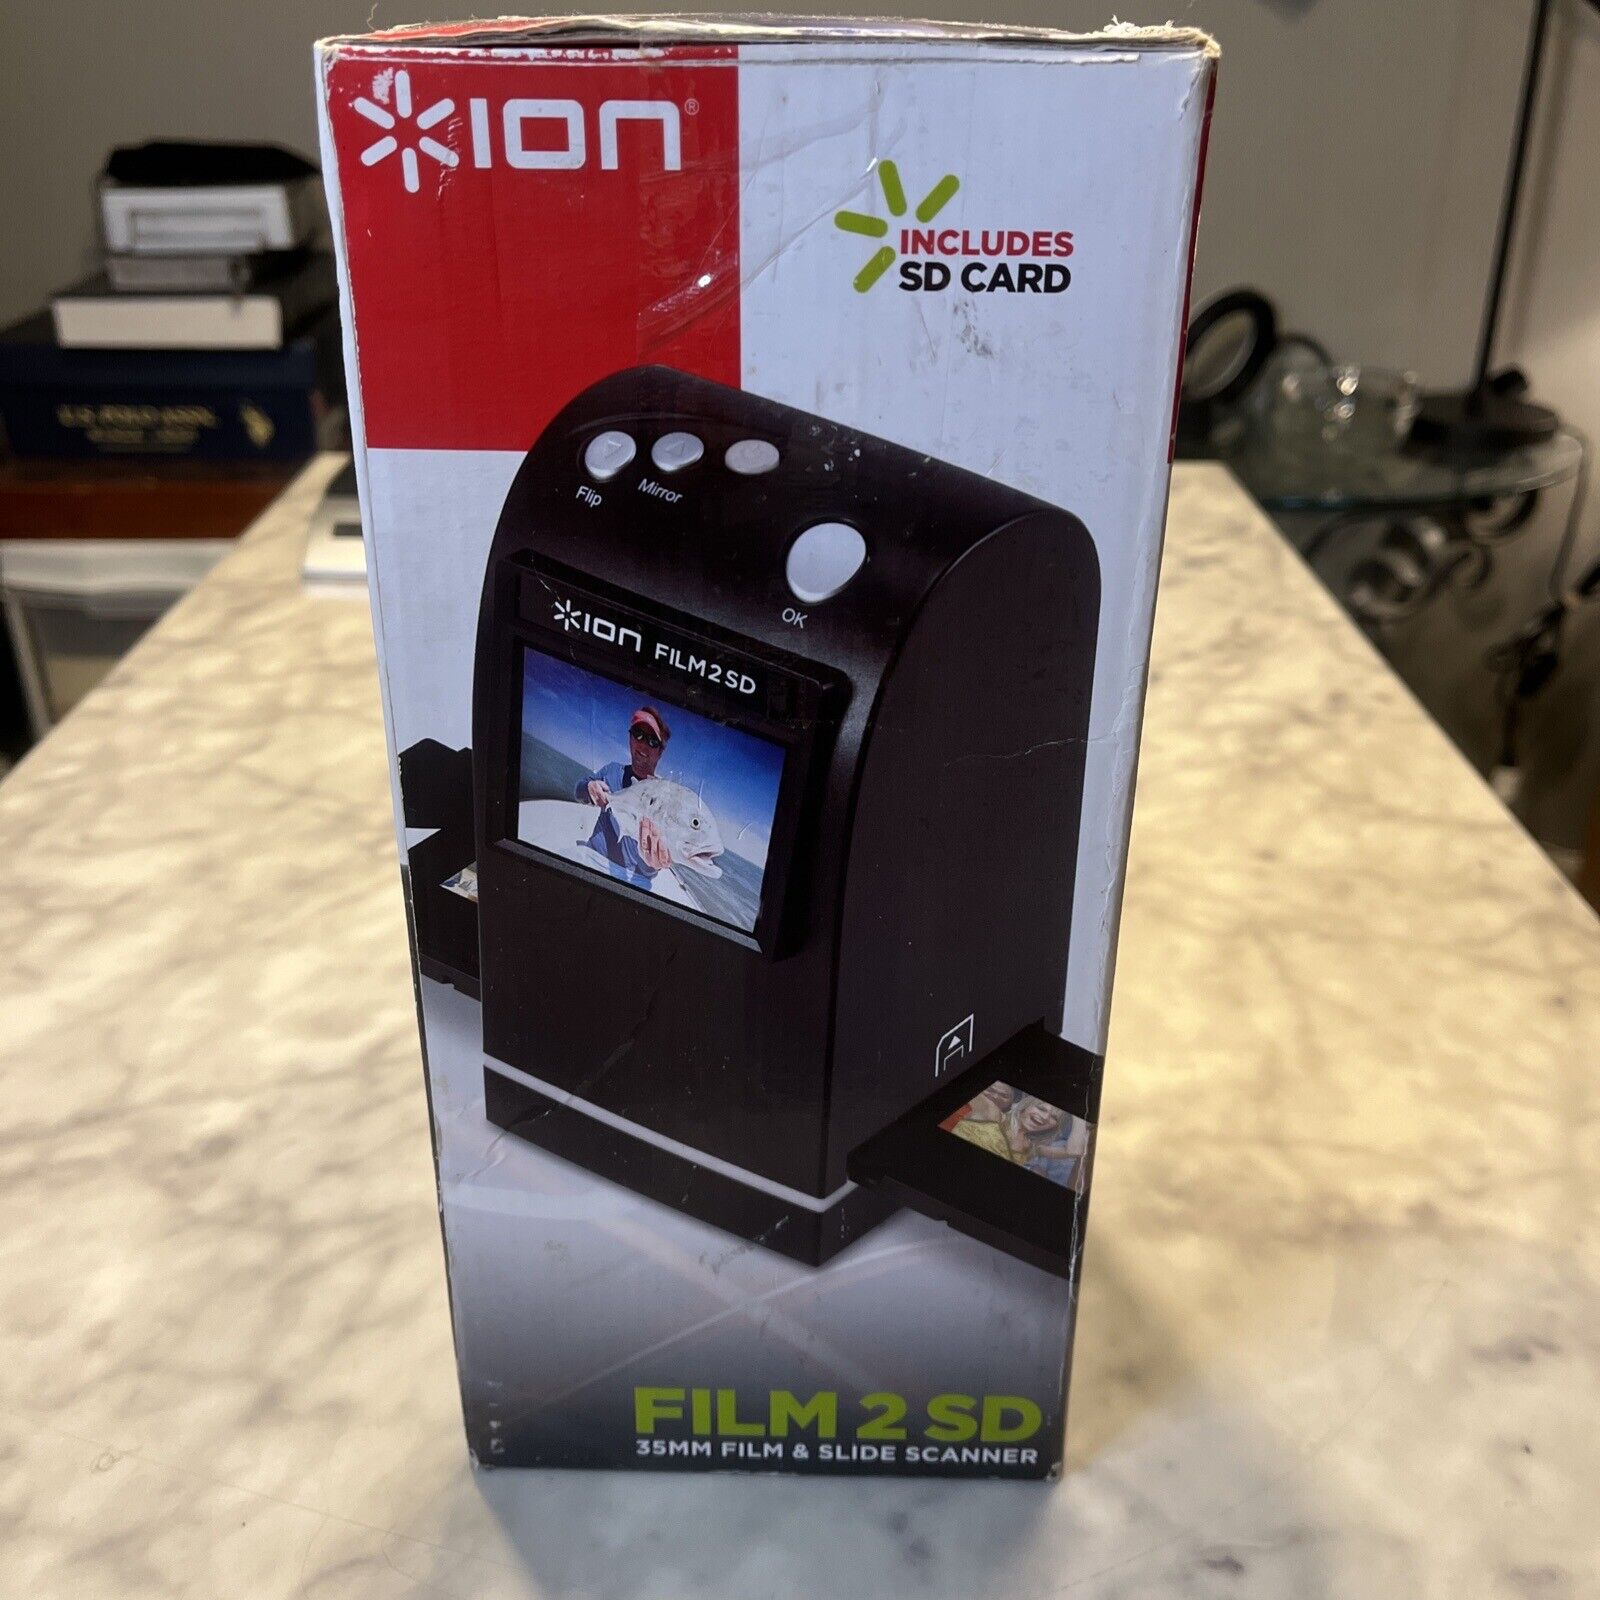 Ion Film 2 SD 35mm Film & Slide Scanner FILM2SD Model #FILM2SDMK2, Tested